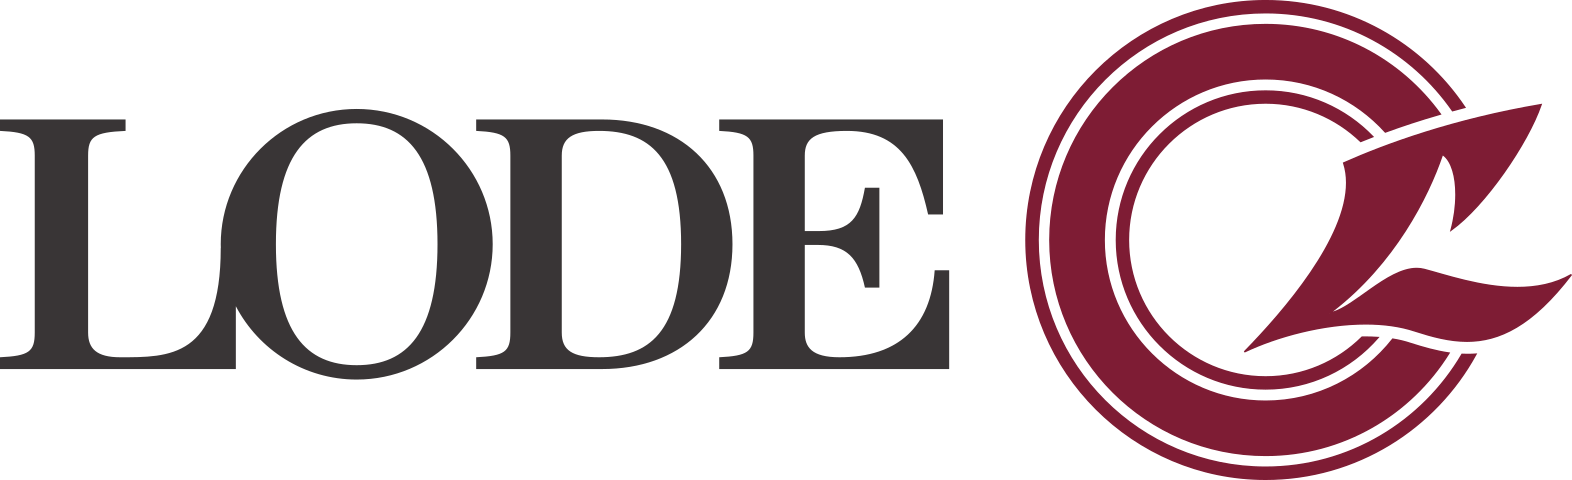 LODE logo